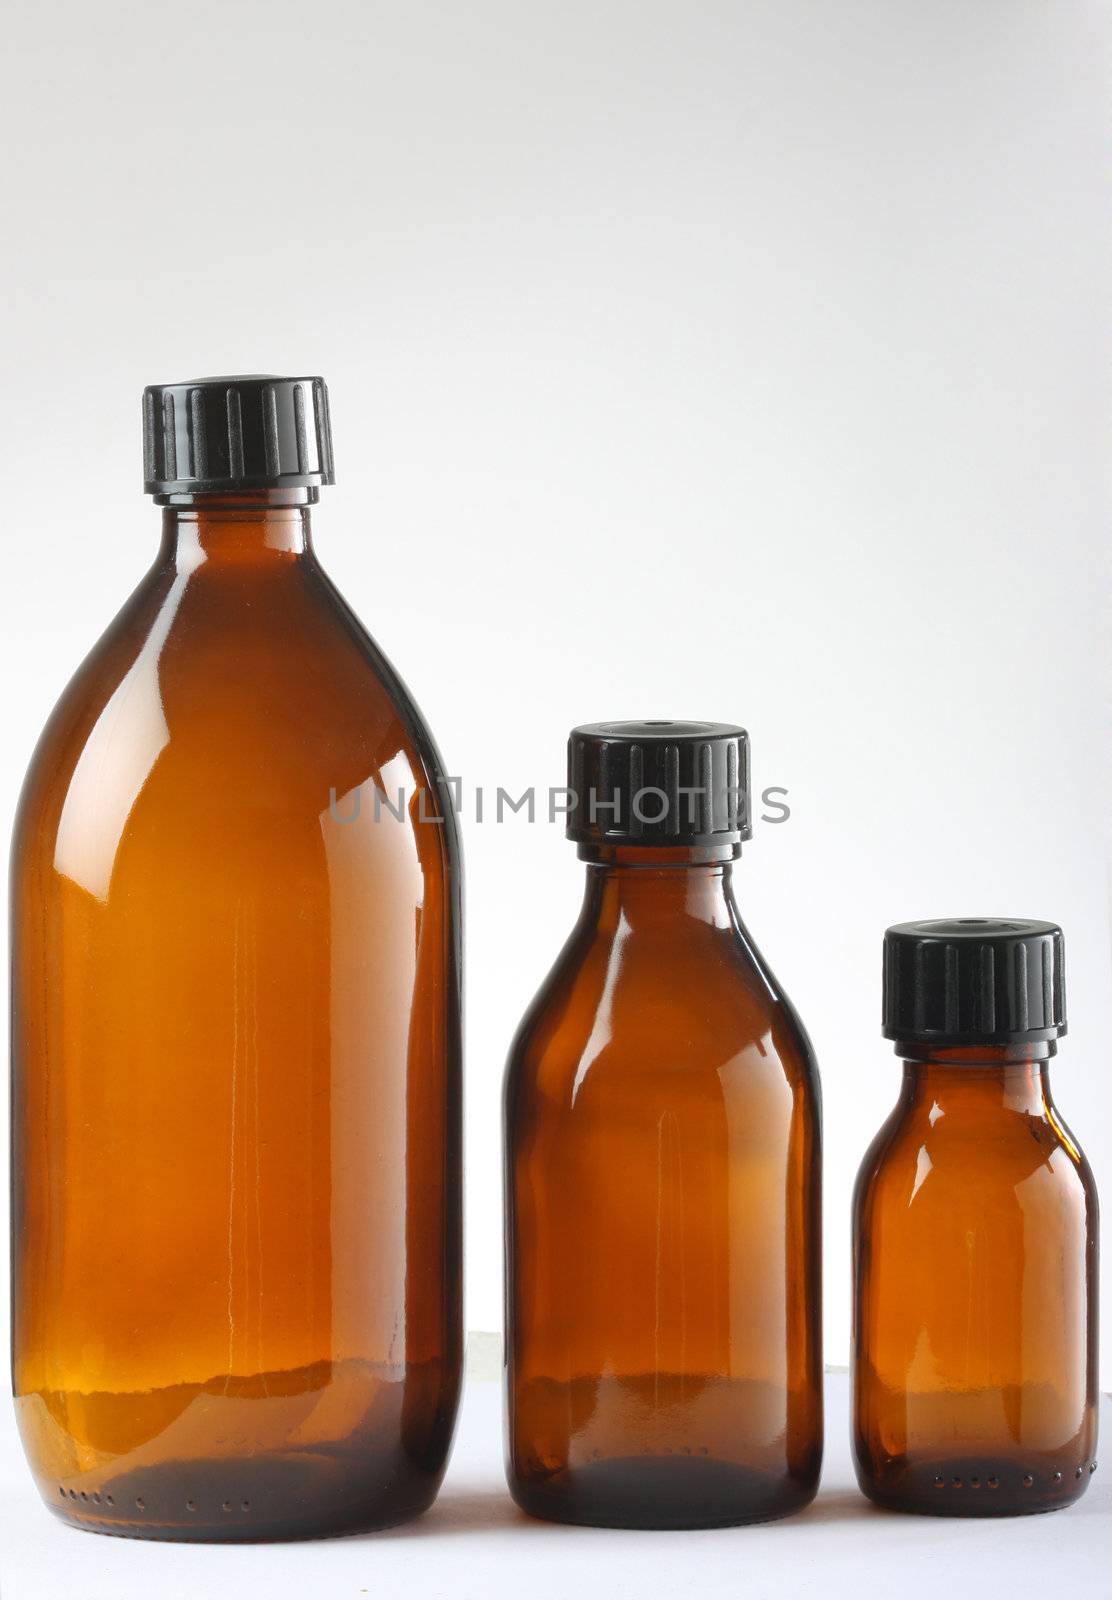 medicine bottles by sumos